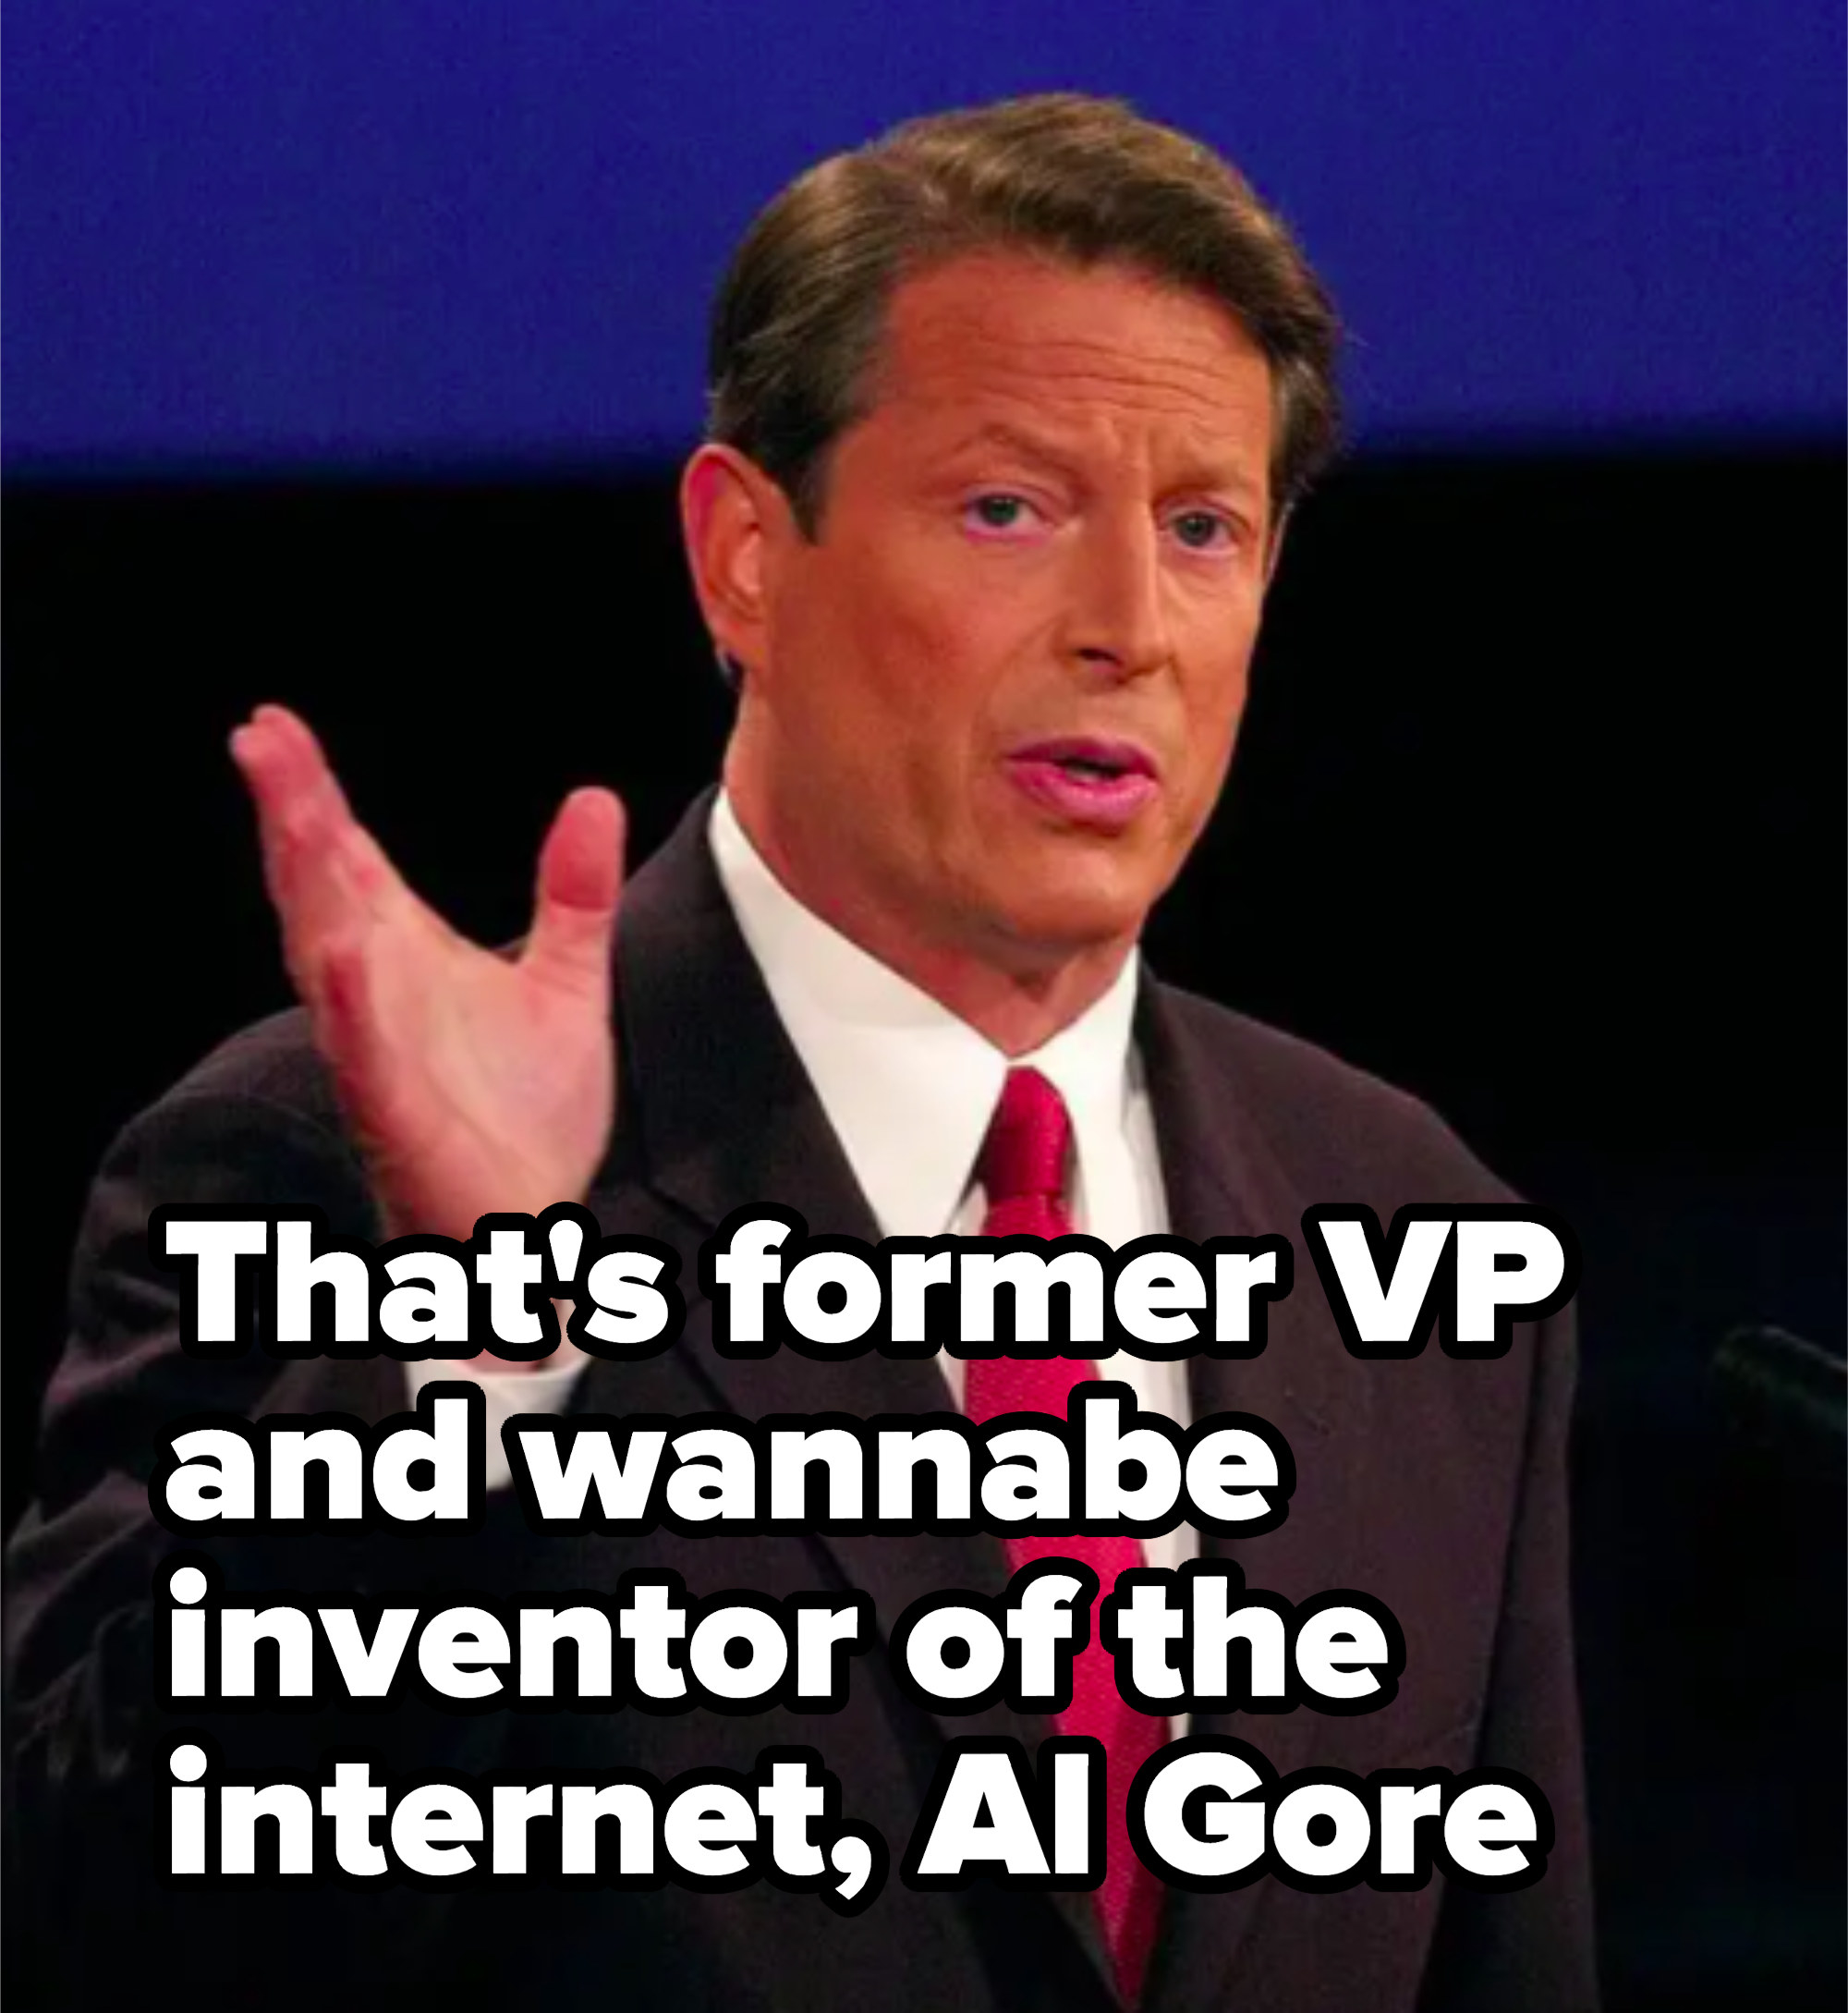 Al Gore in a suit at a debate